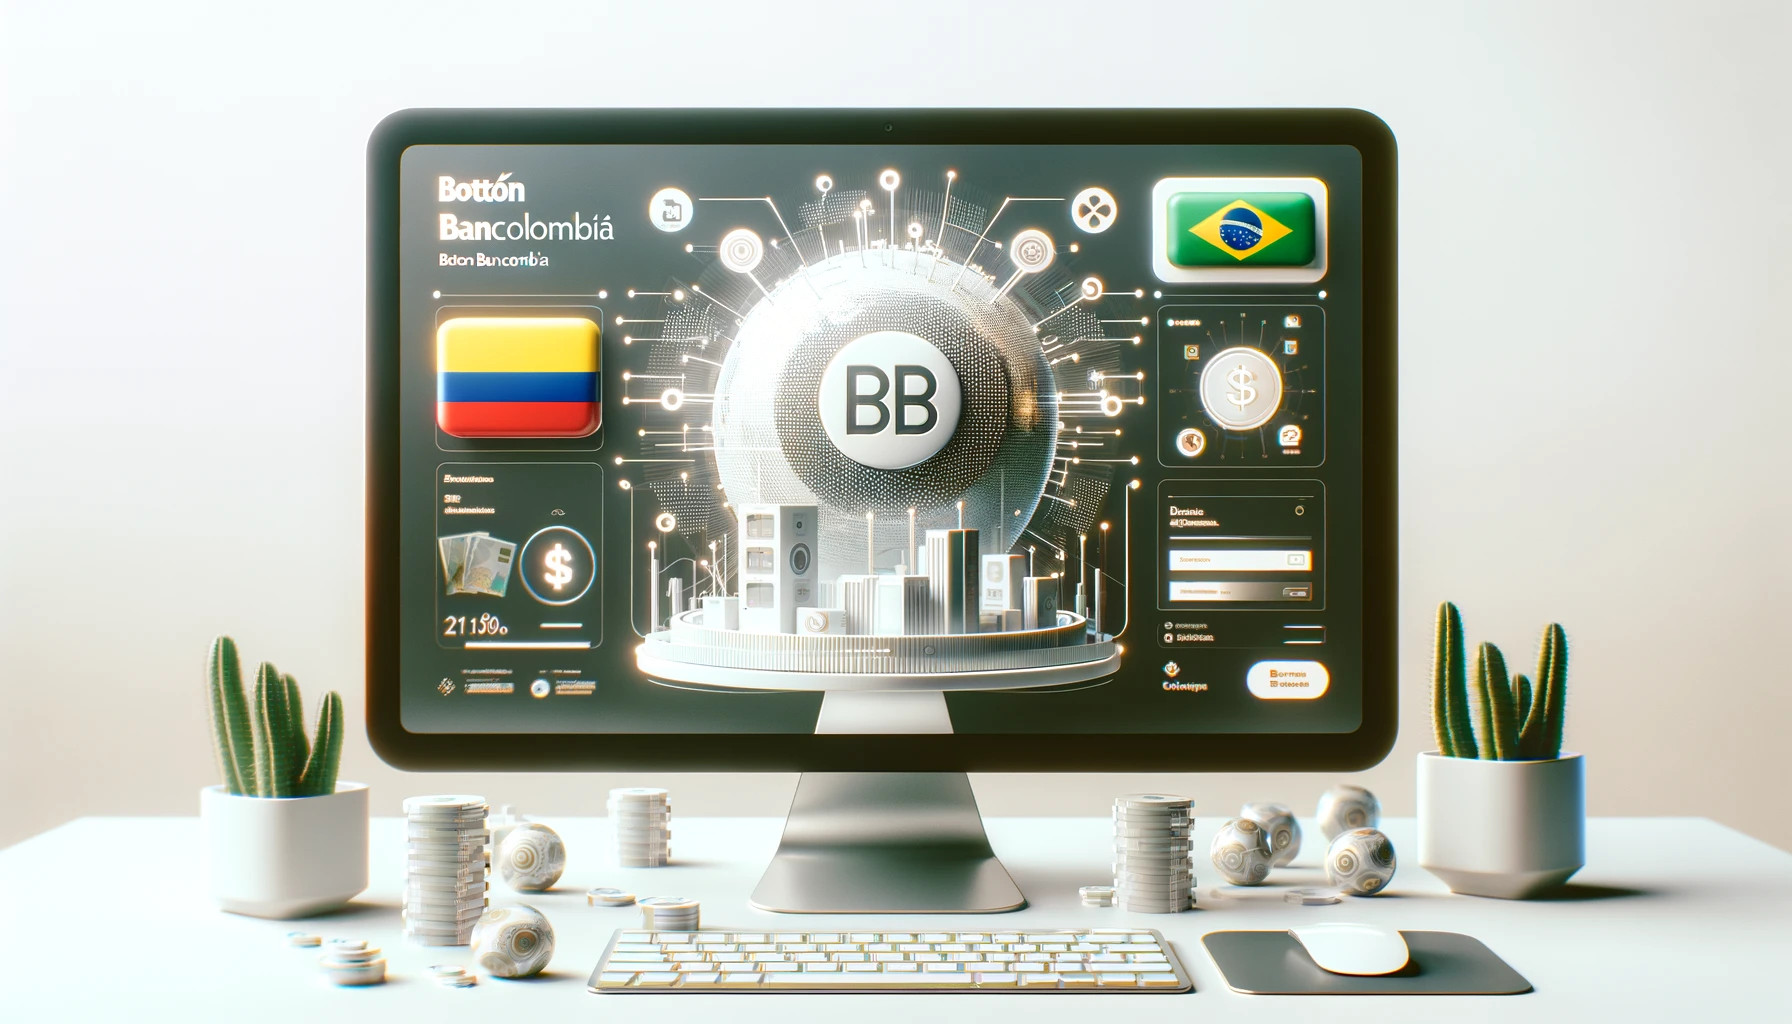 Ebanx Incorpora Botón Bancolombia Para Mejorar Opciones De Pago